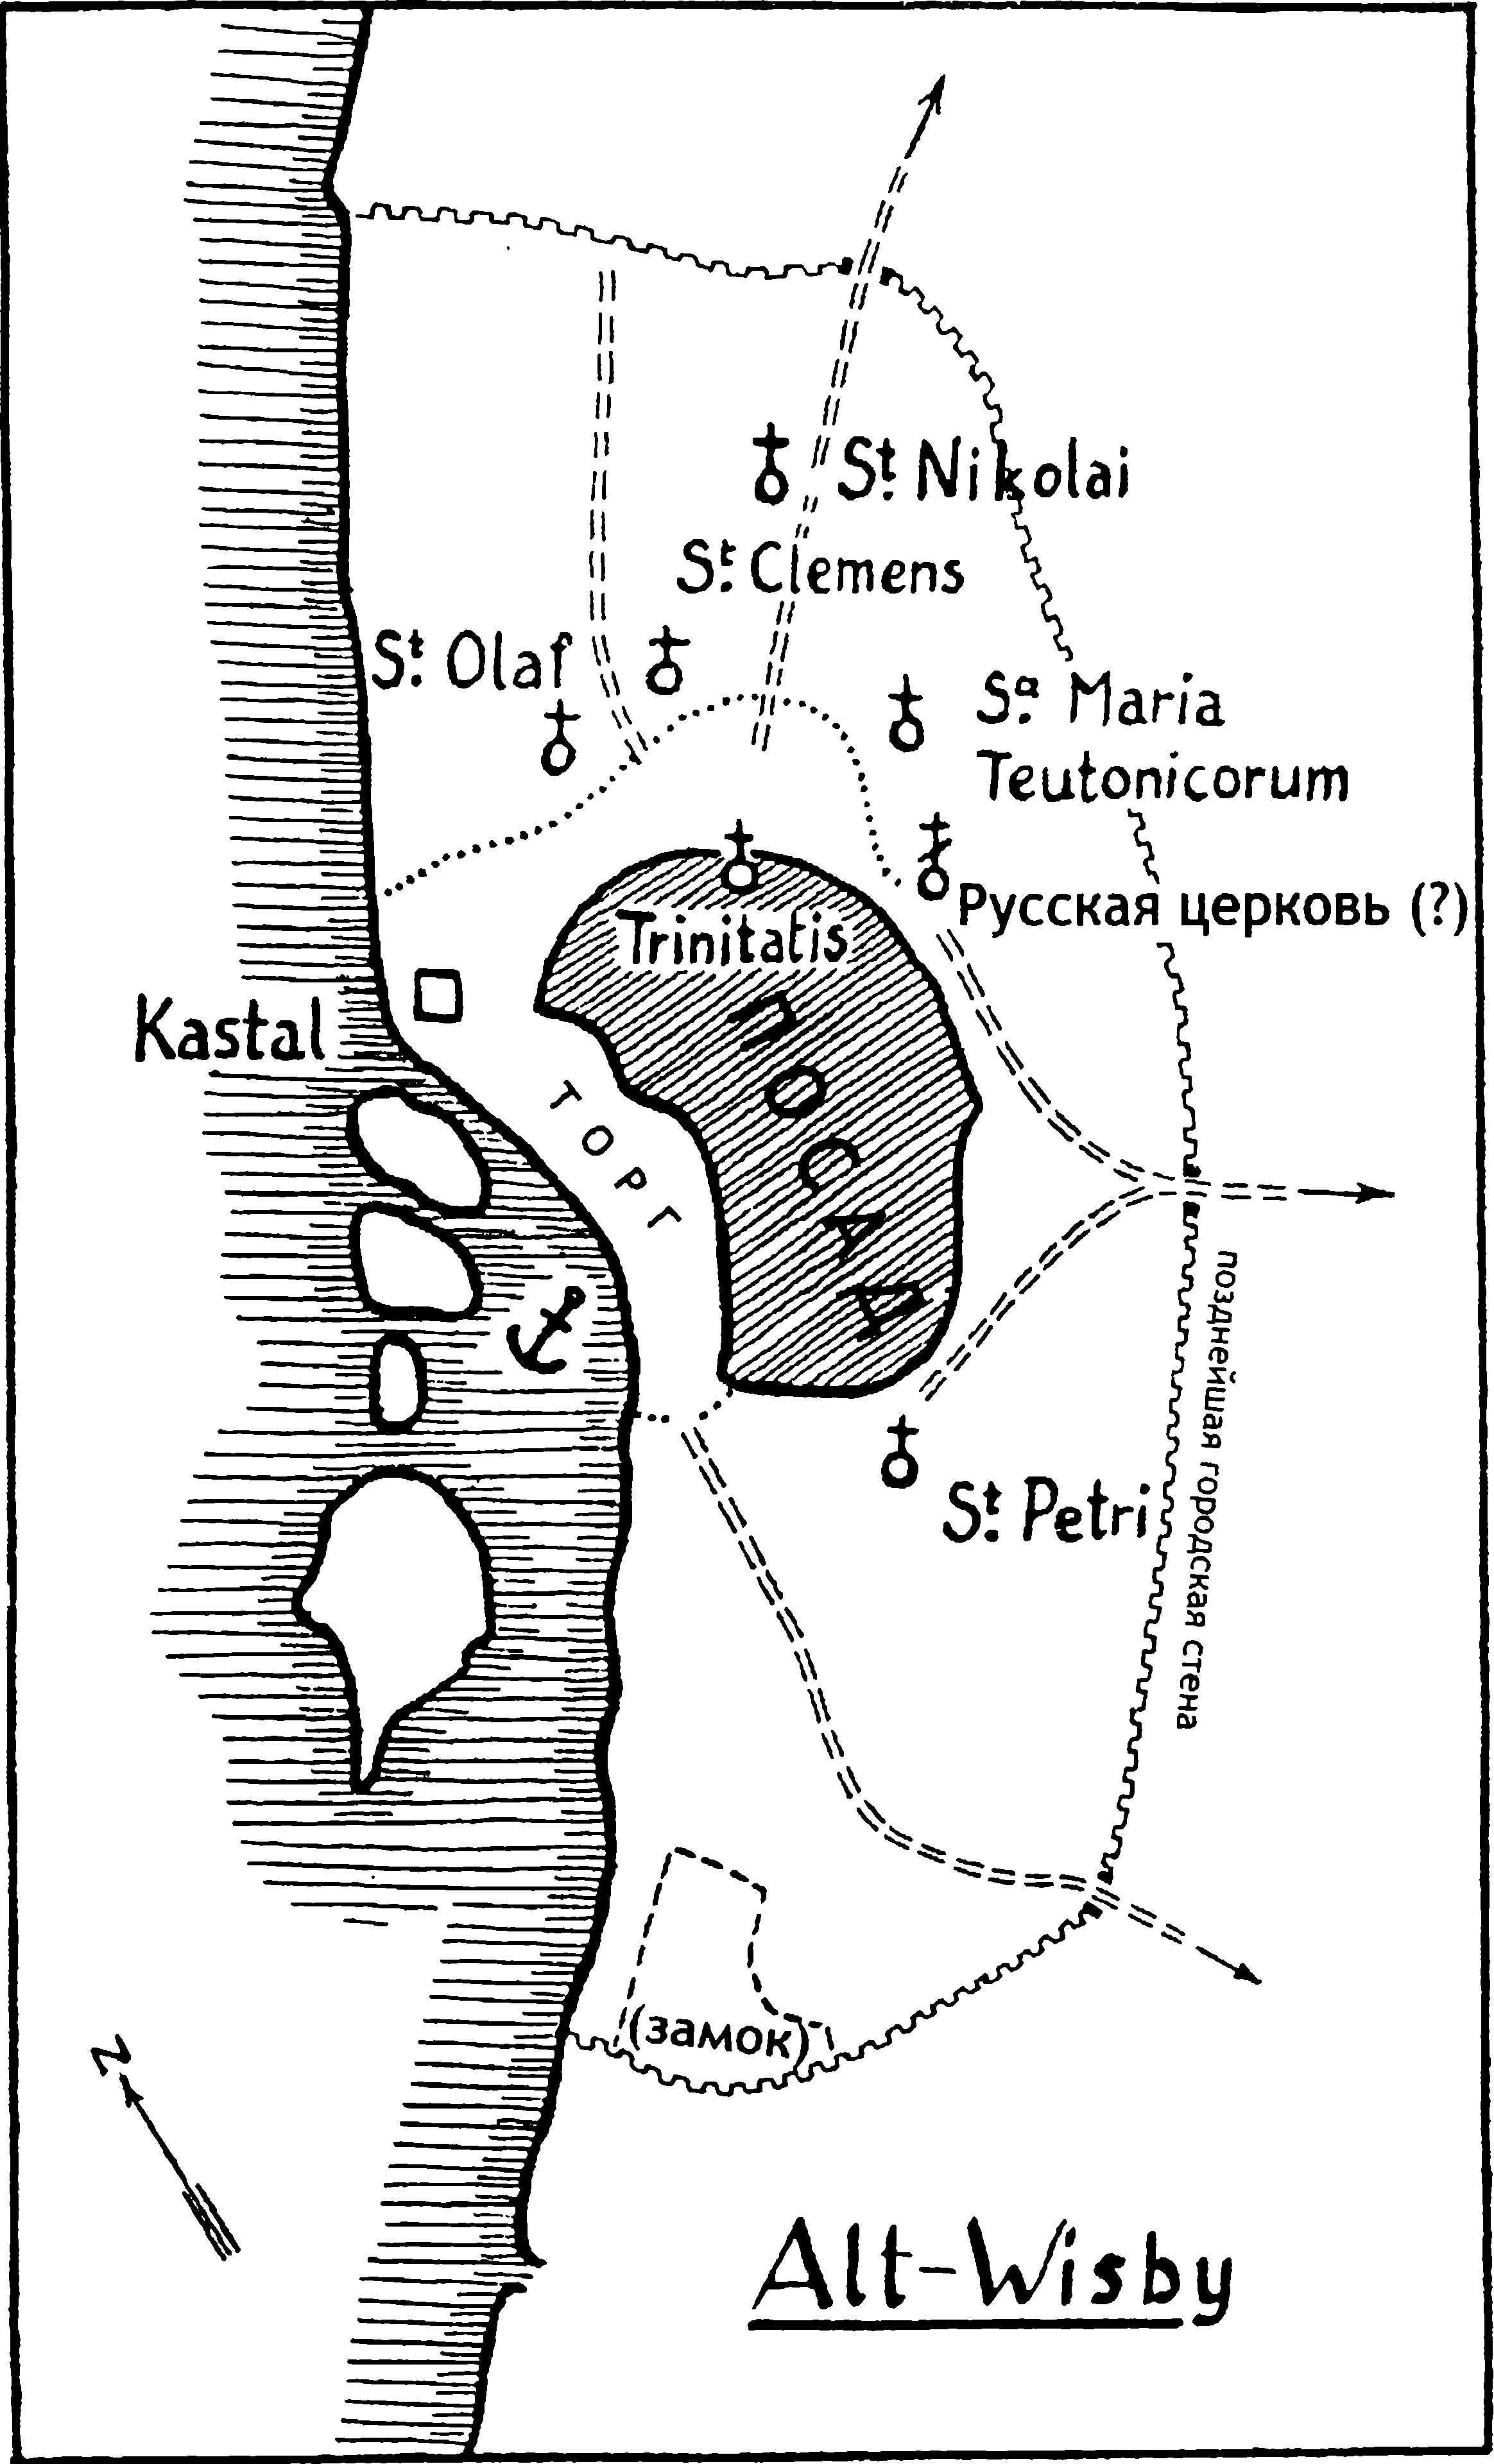 План старого Висбю, Готланд. Trinitatis (Drotten) — Троицкий собор; Kastal — отдельная укрепленная башня